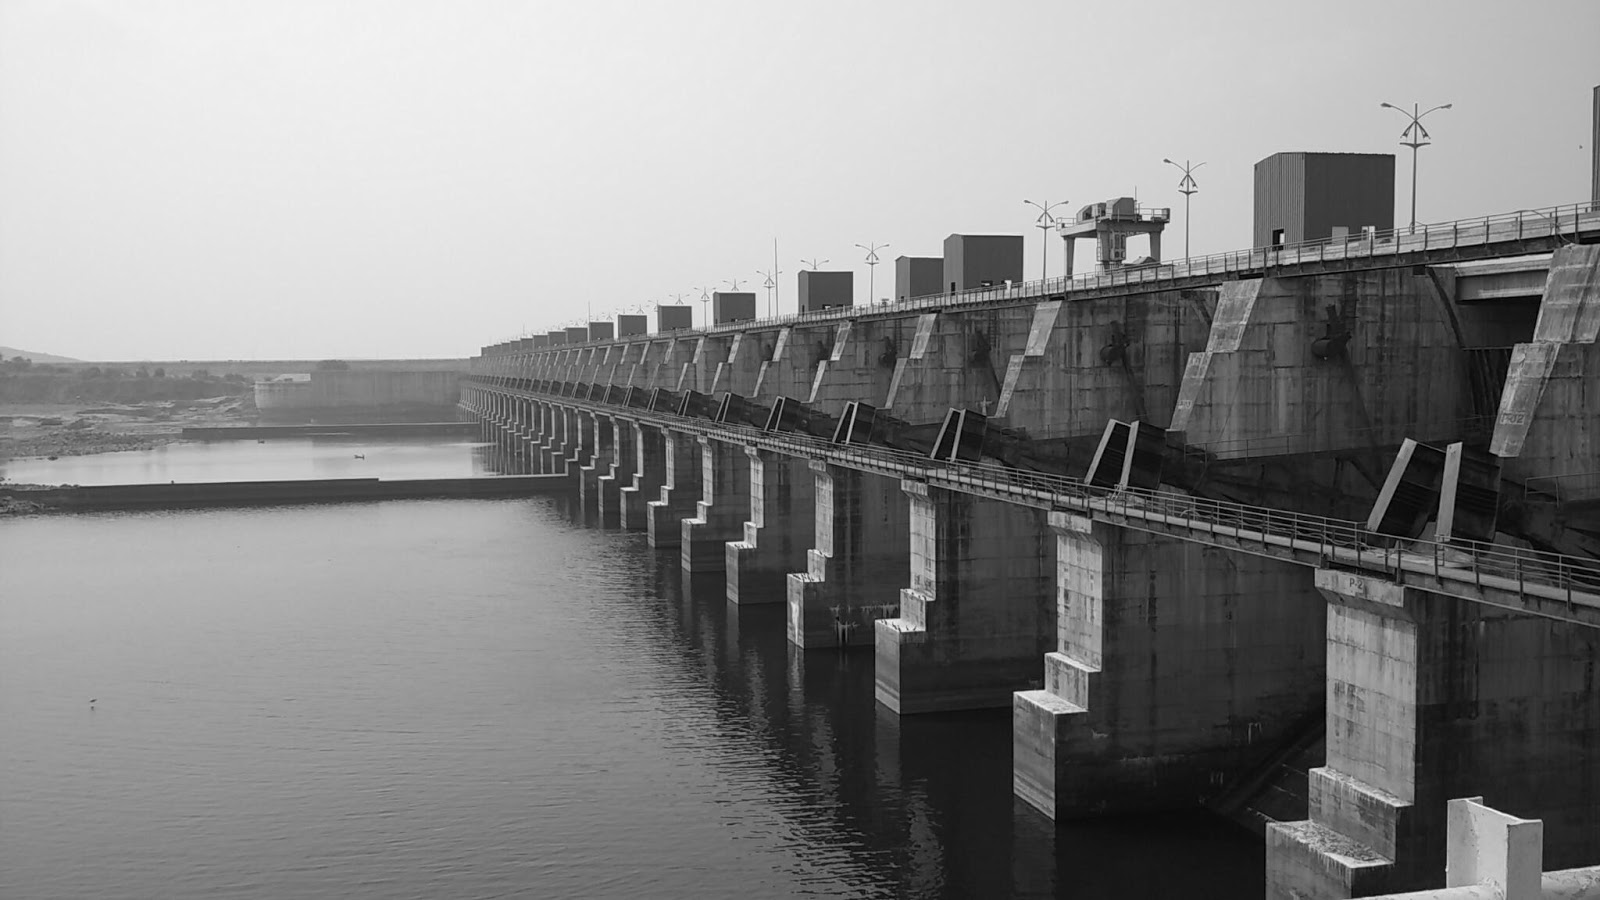 Almatti Dam